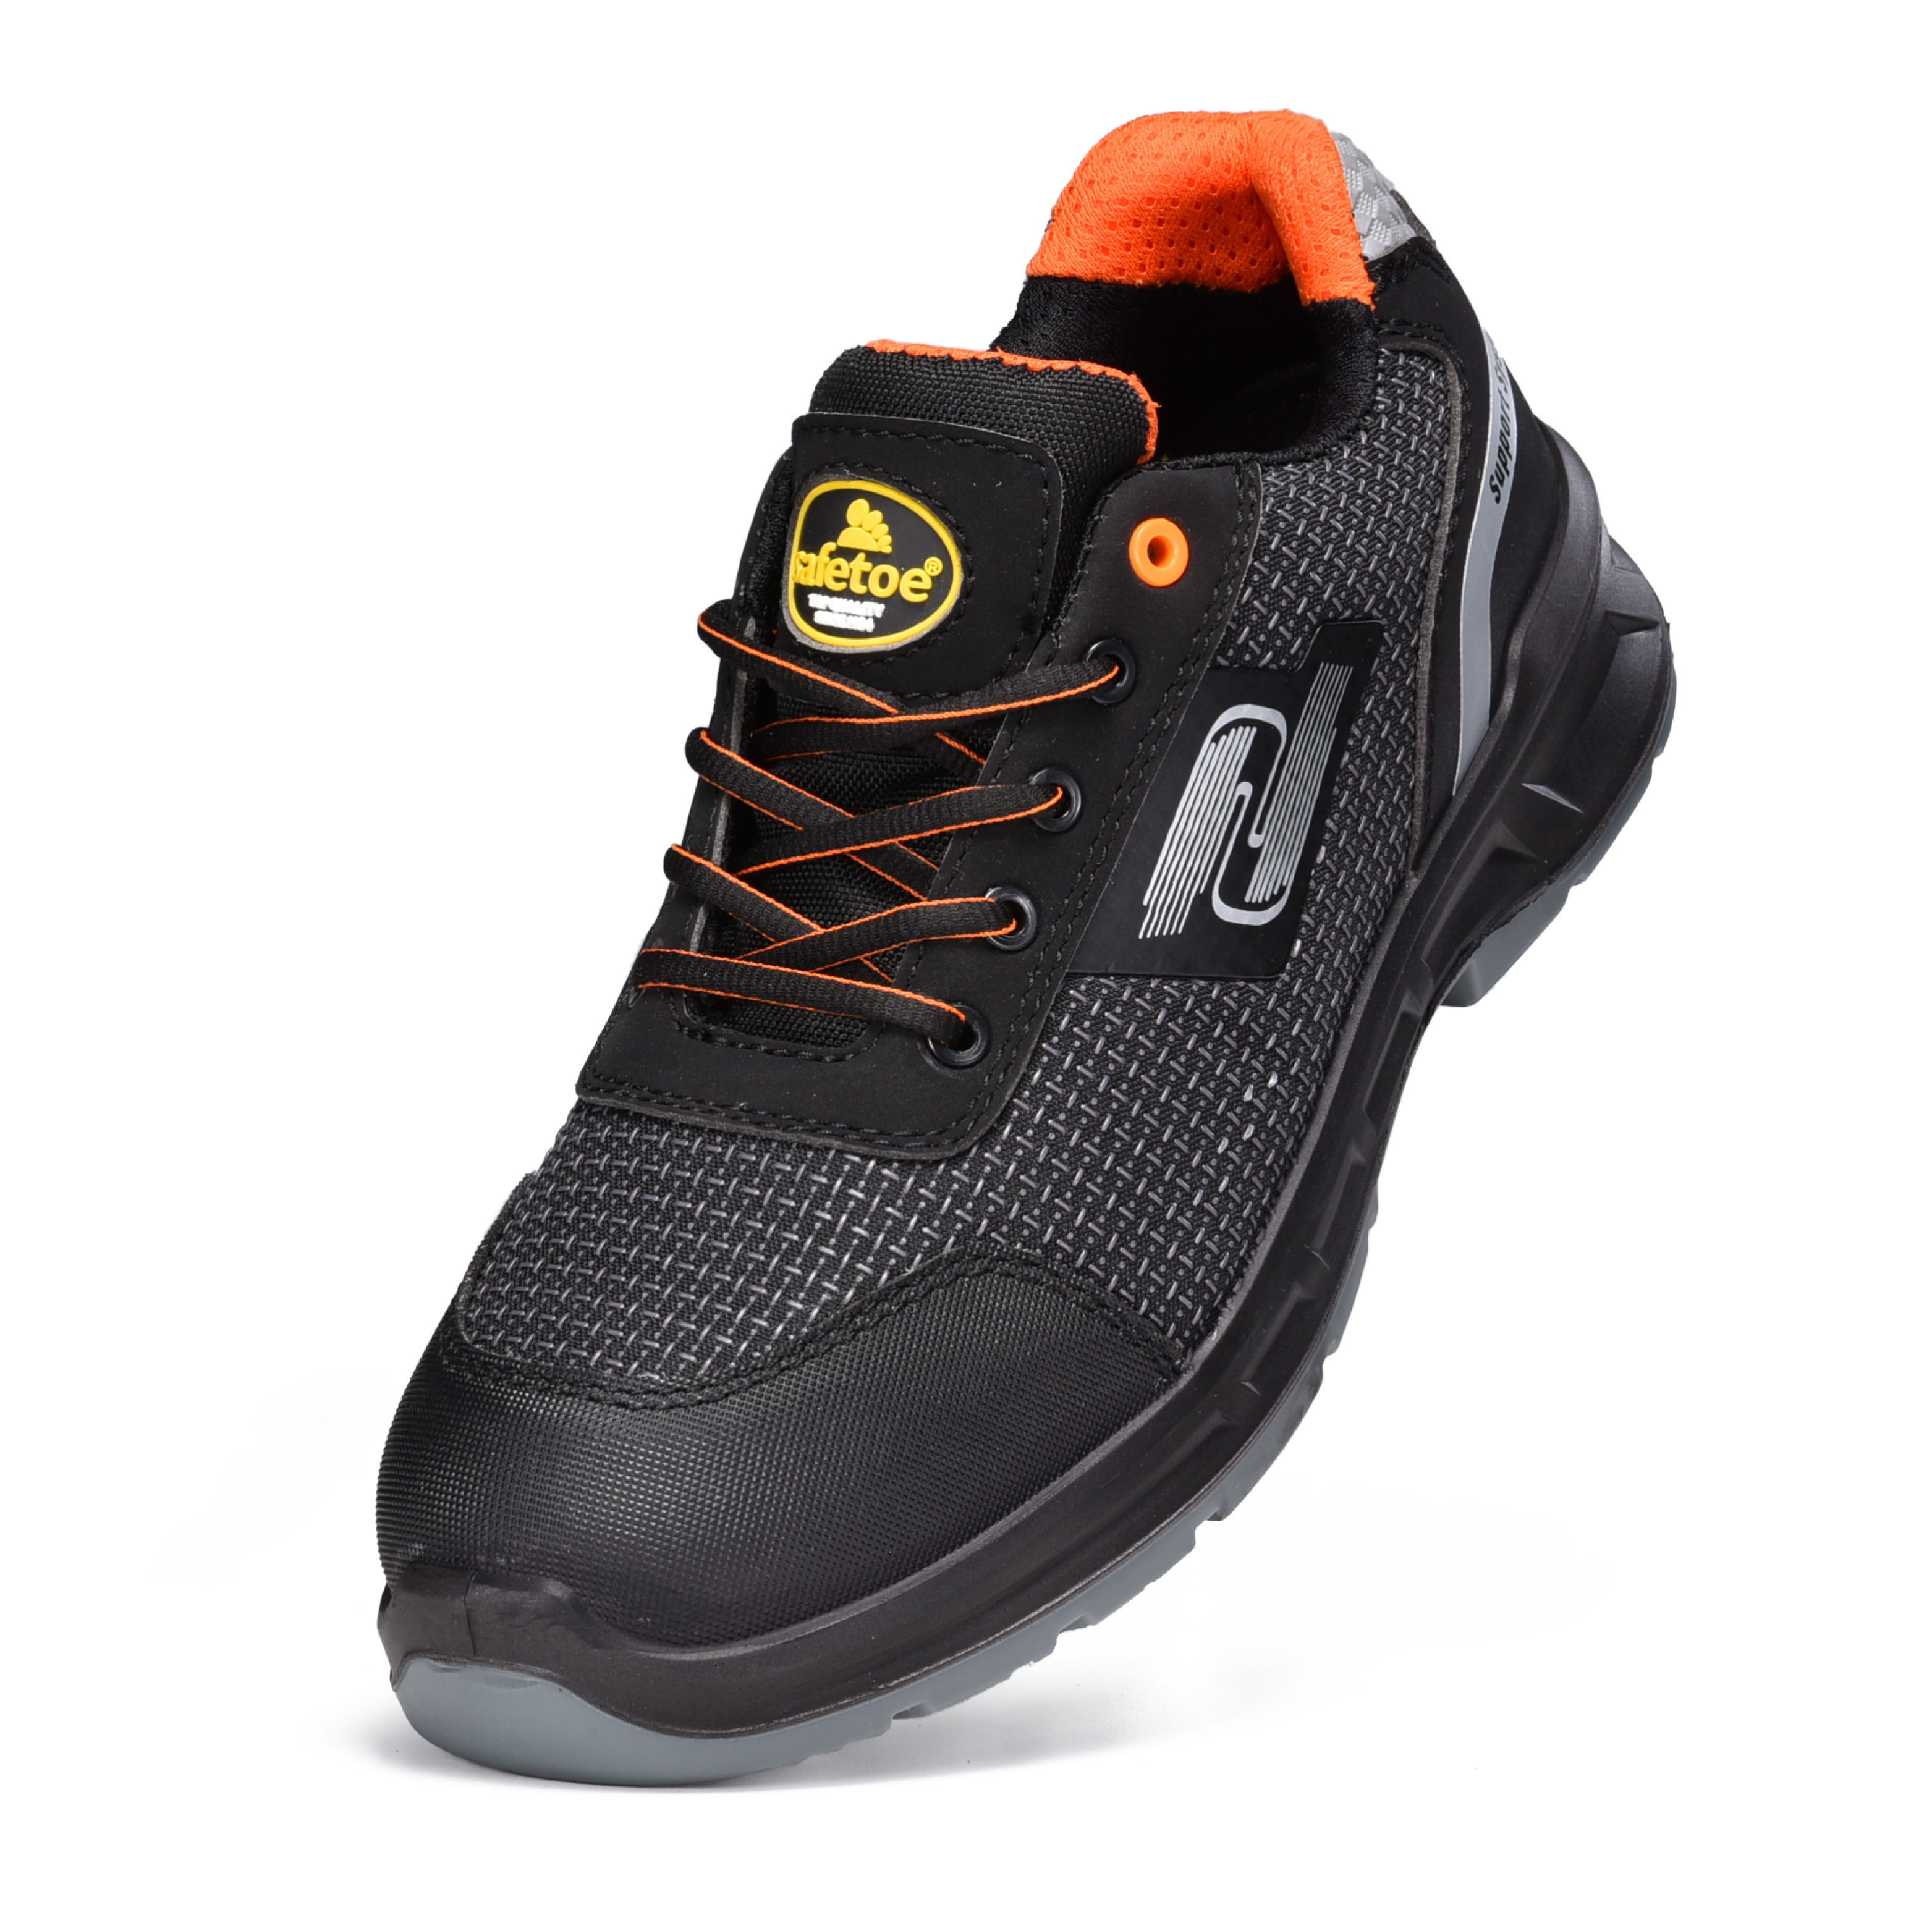 Chaussures de travail légères S1P avec embout composite et plaque en Kevlar L-7512 Orange